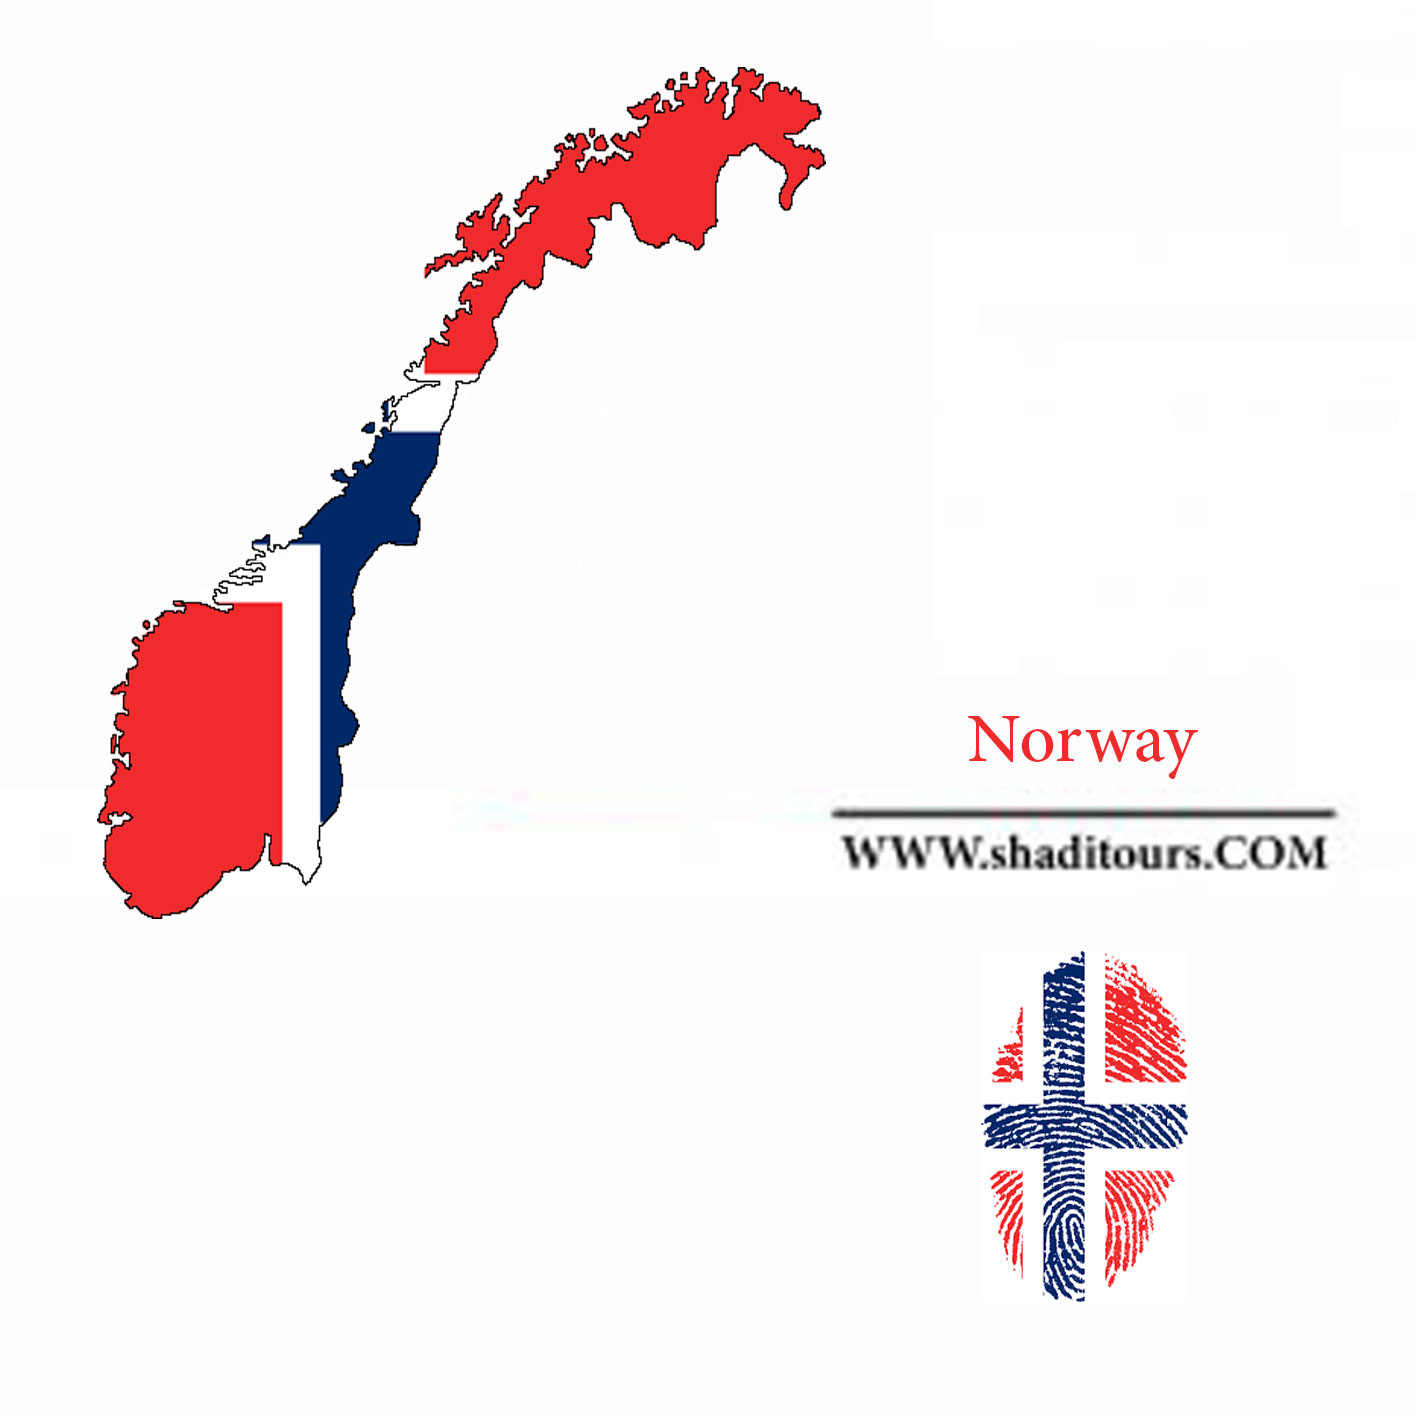 Norway-shaditours